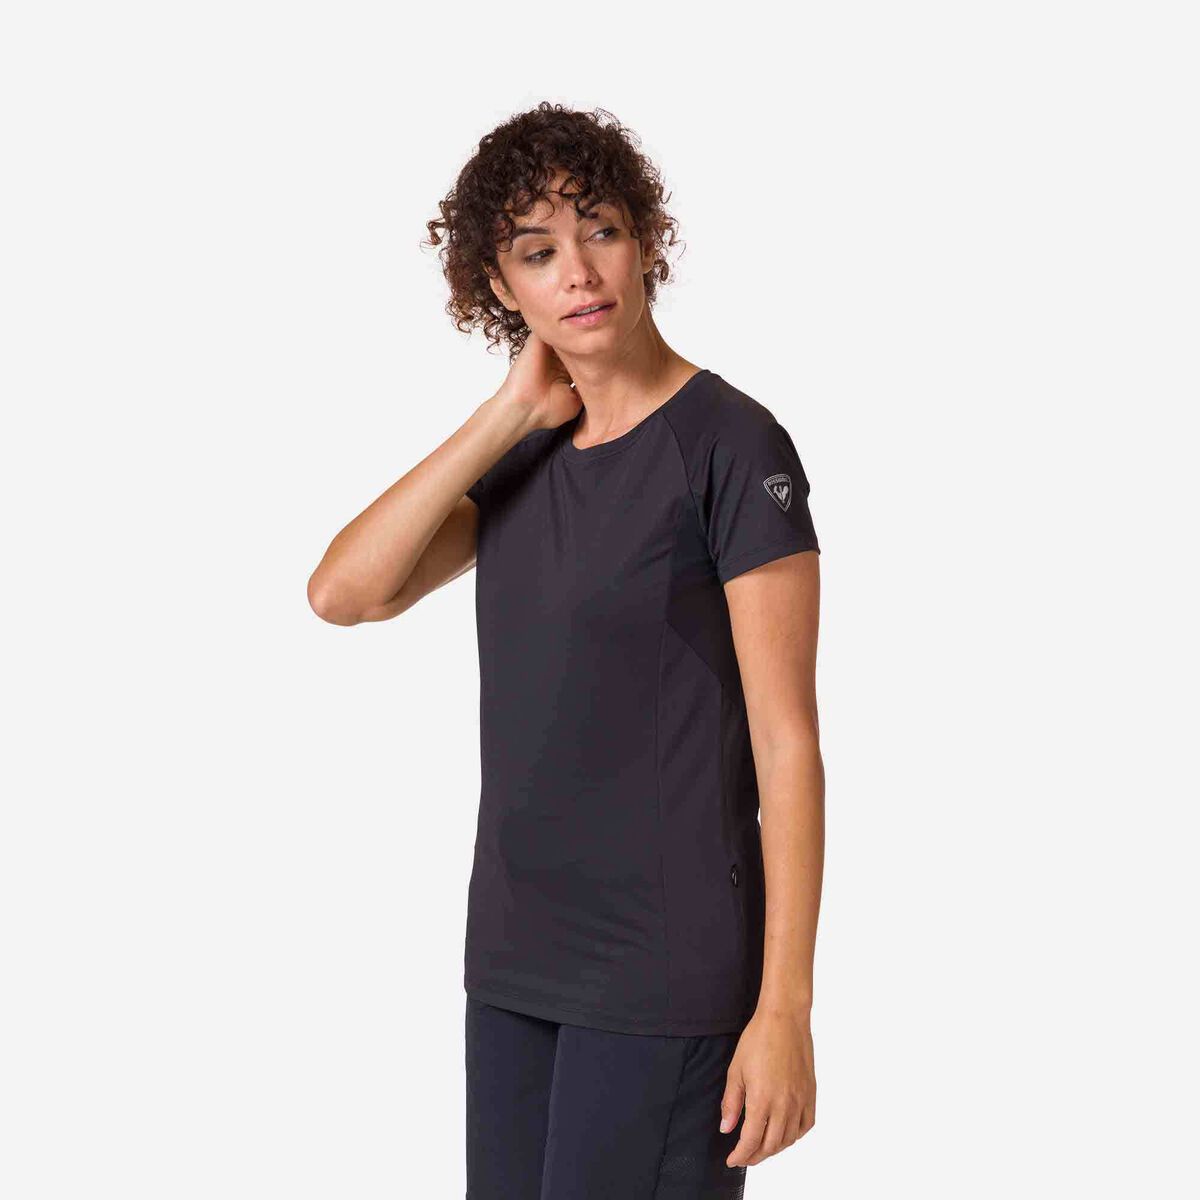 Kurzarm-Jerseyshirt für Damen Relaxed Fit